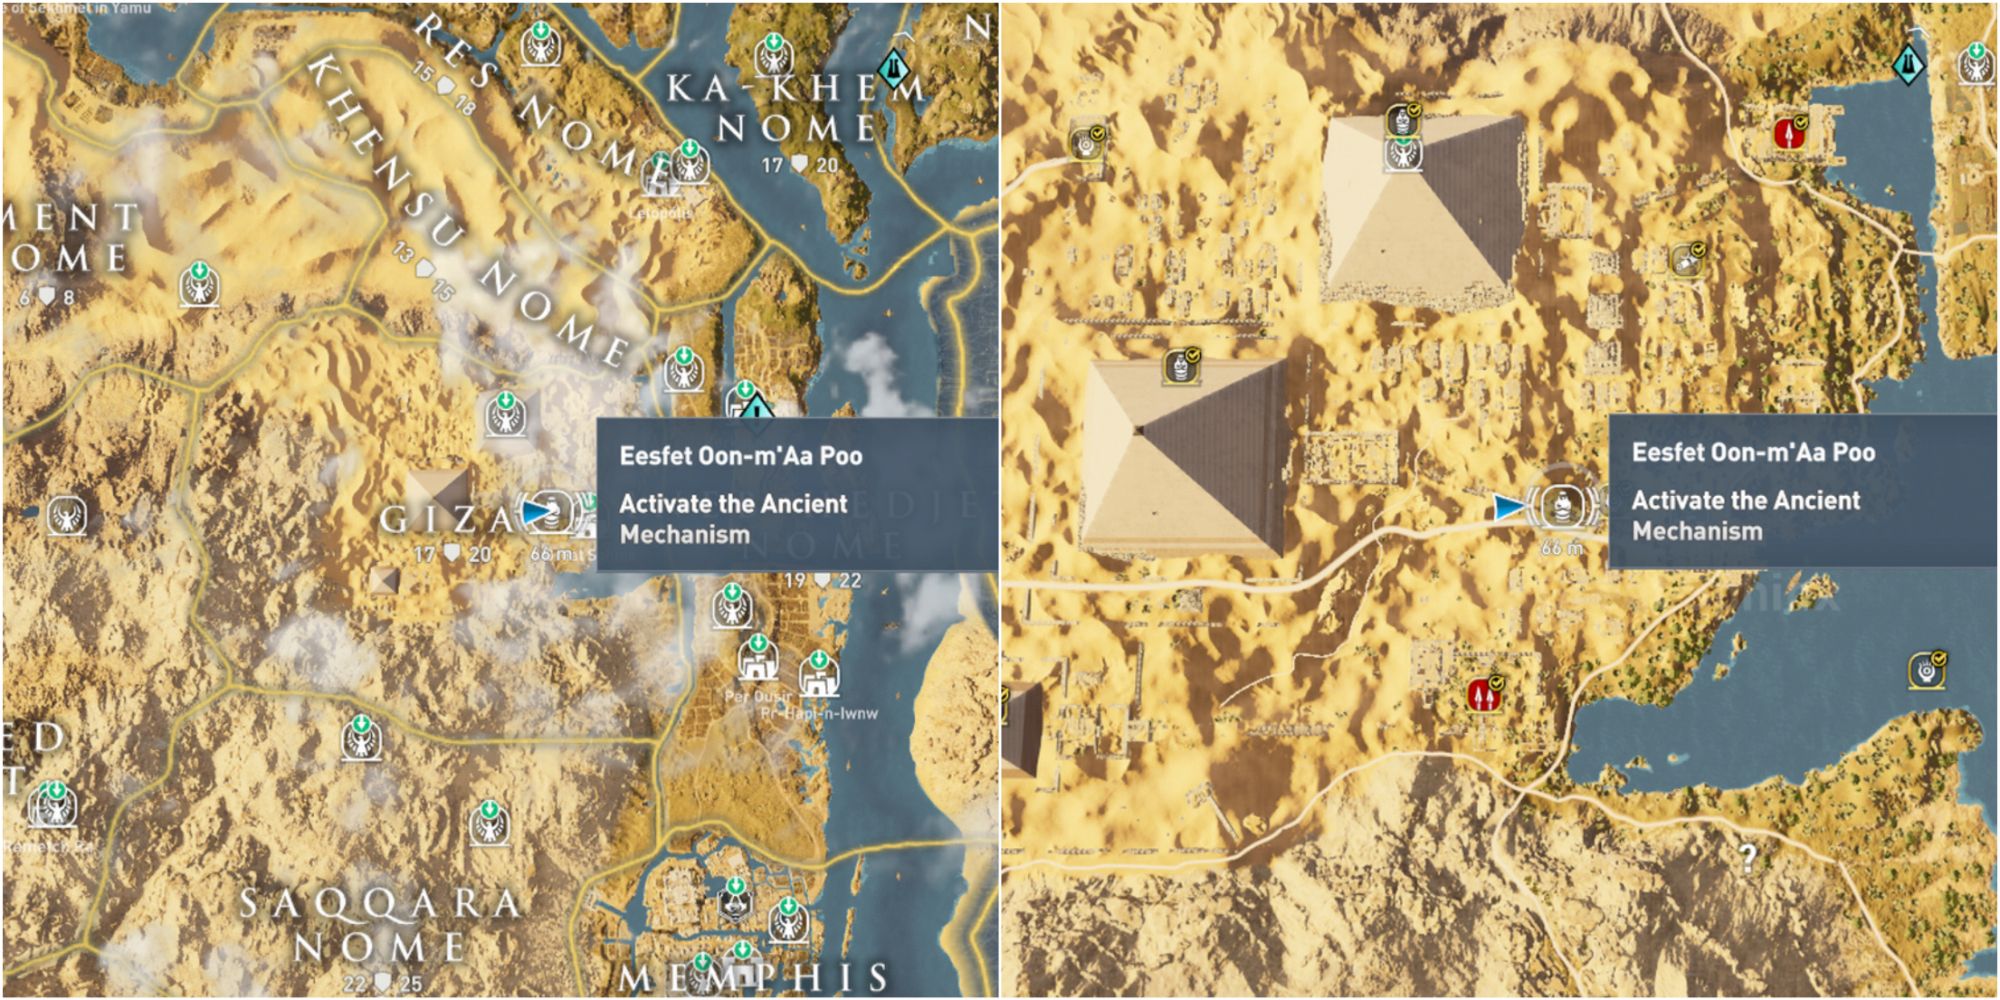 Assassin's Creed Origins Split Image Eesfet Oon-m’Aa Poo Map Location